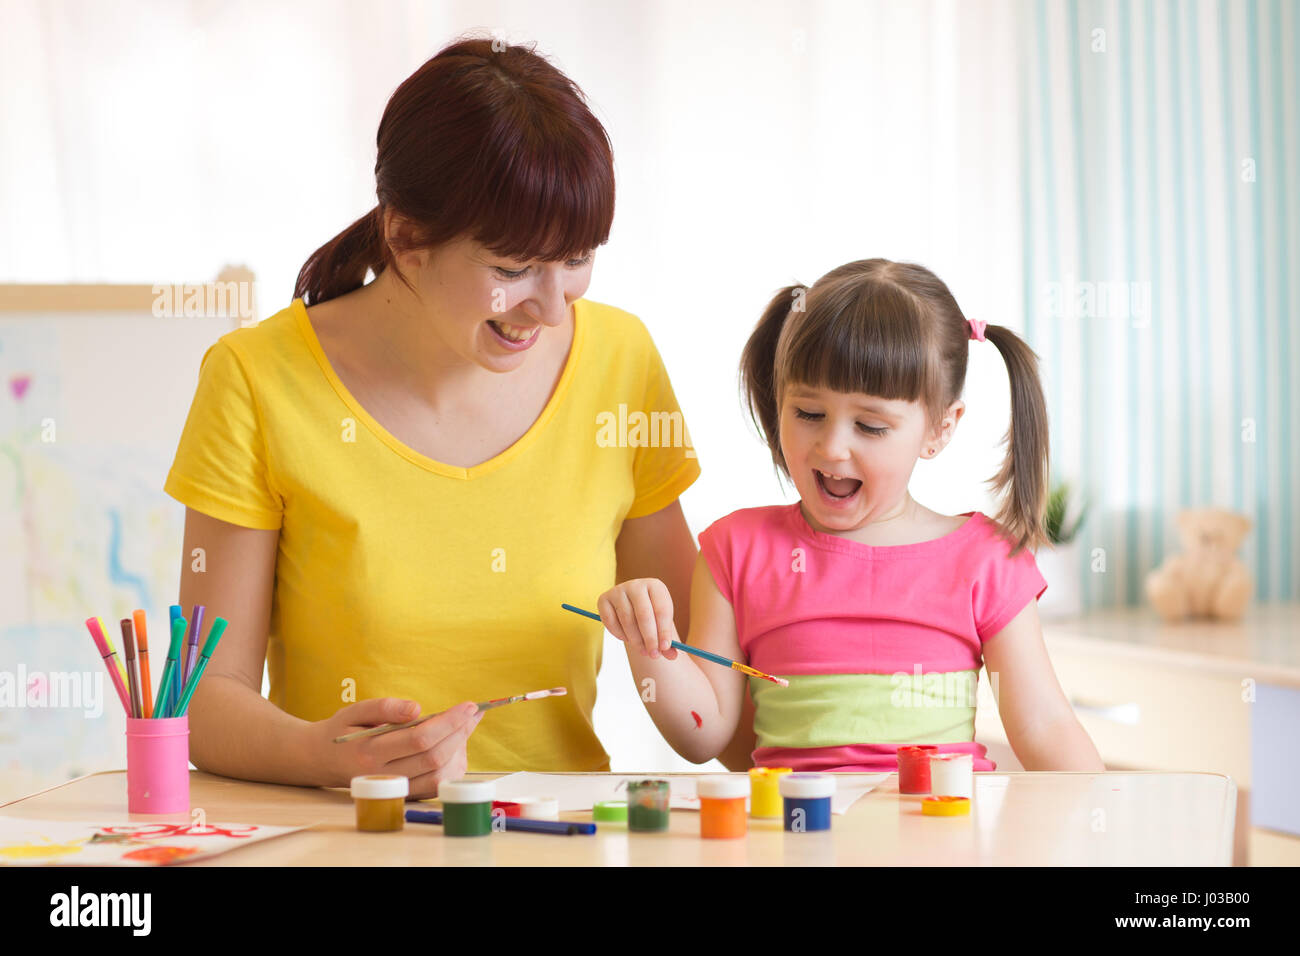 Glückliches Kind und Mutter zusammen malen. Erwachsene Frau hilft das Kind Mädchen. Stockfoto